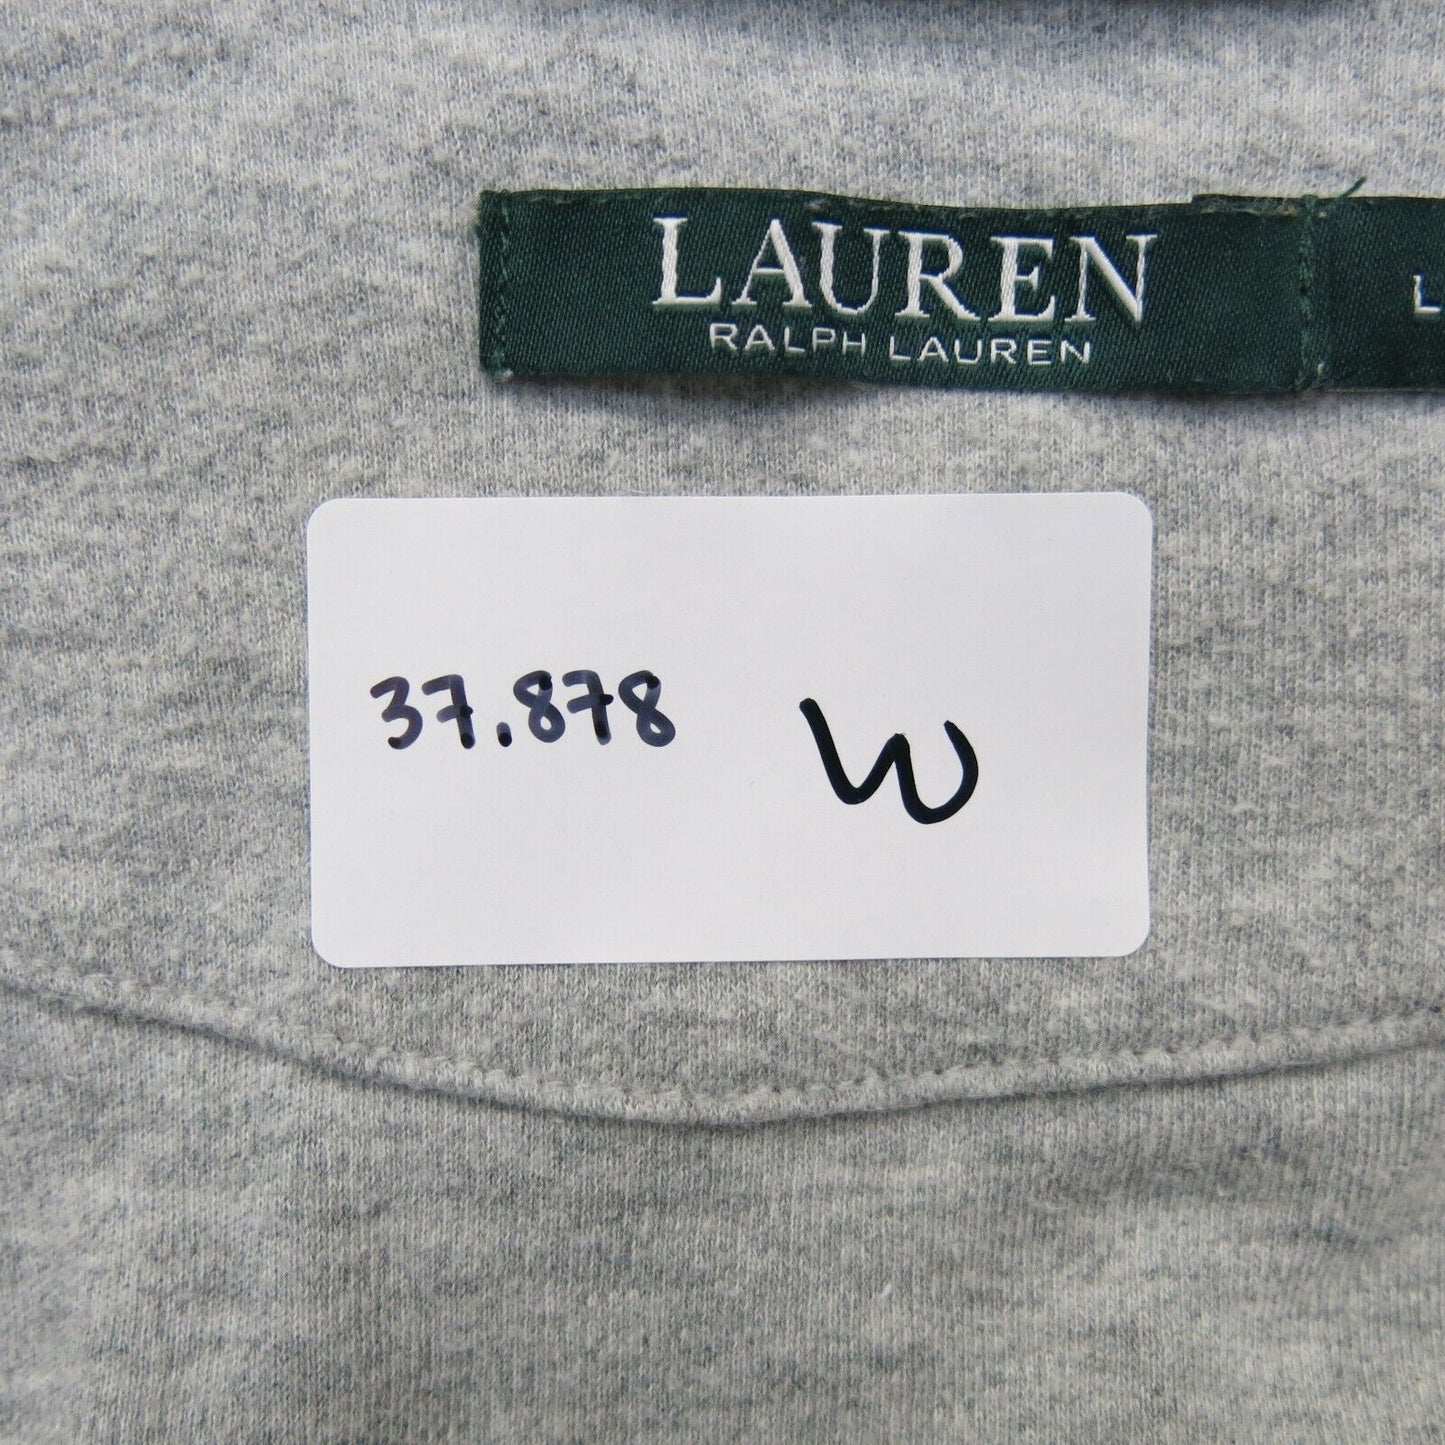 Lauren Ralph Lauren Womens Coat Long Sleeves Open Front Pockets Gray Size Large